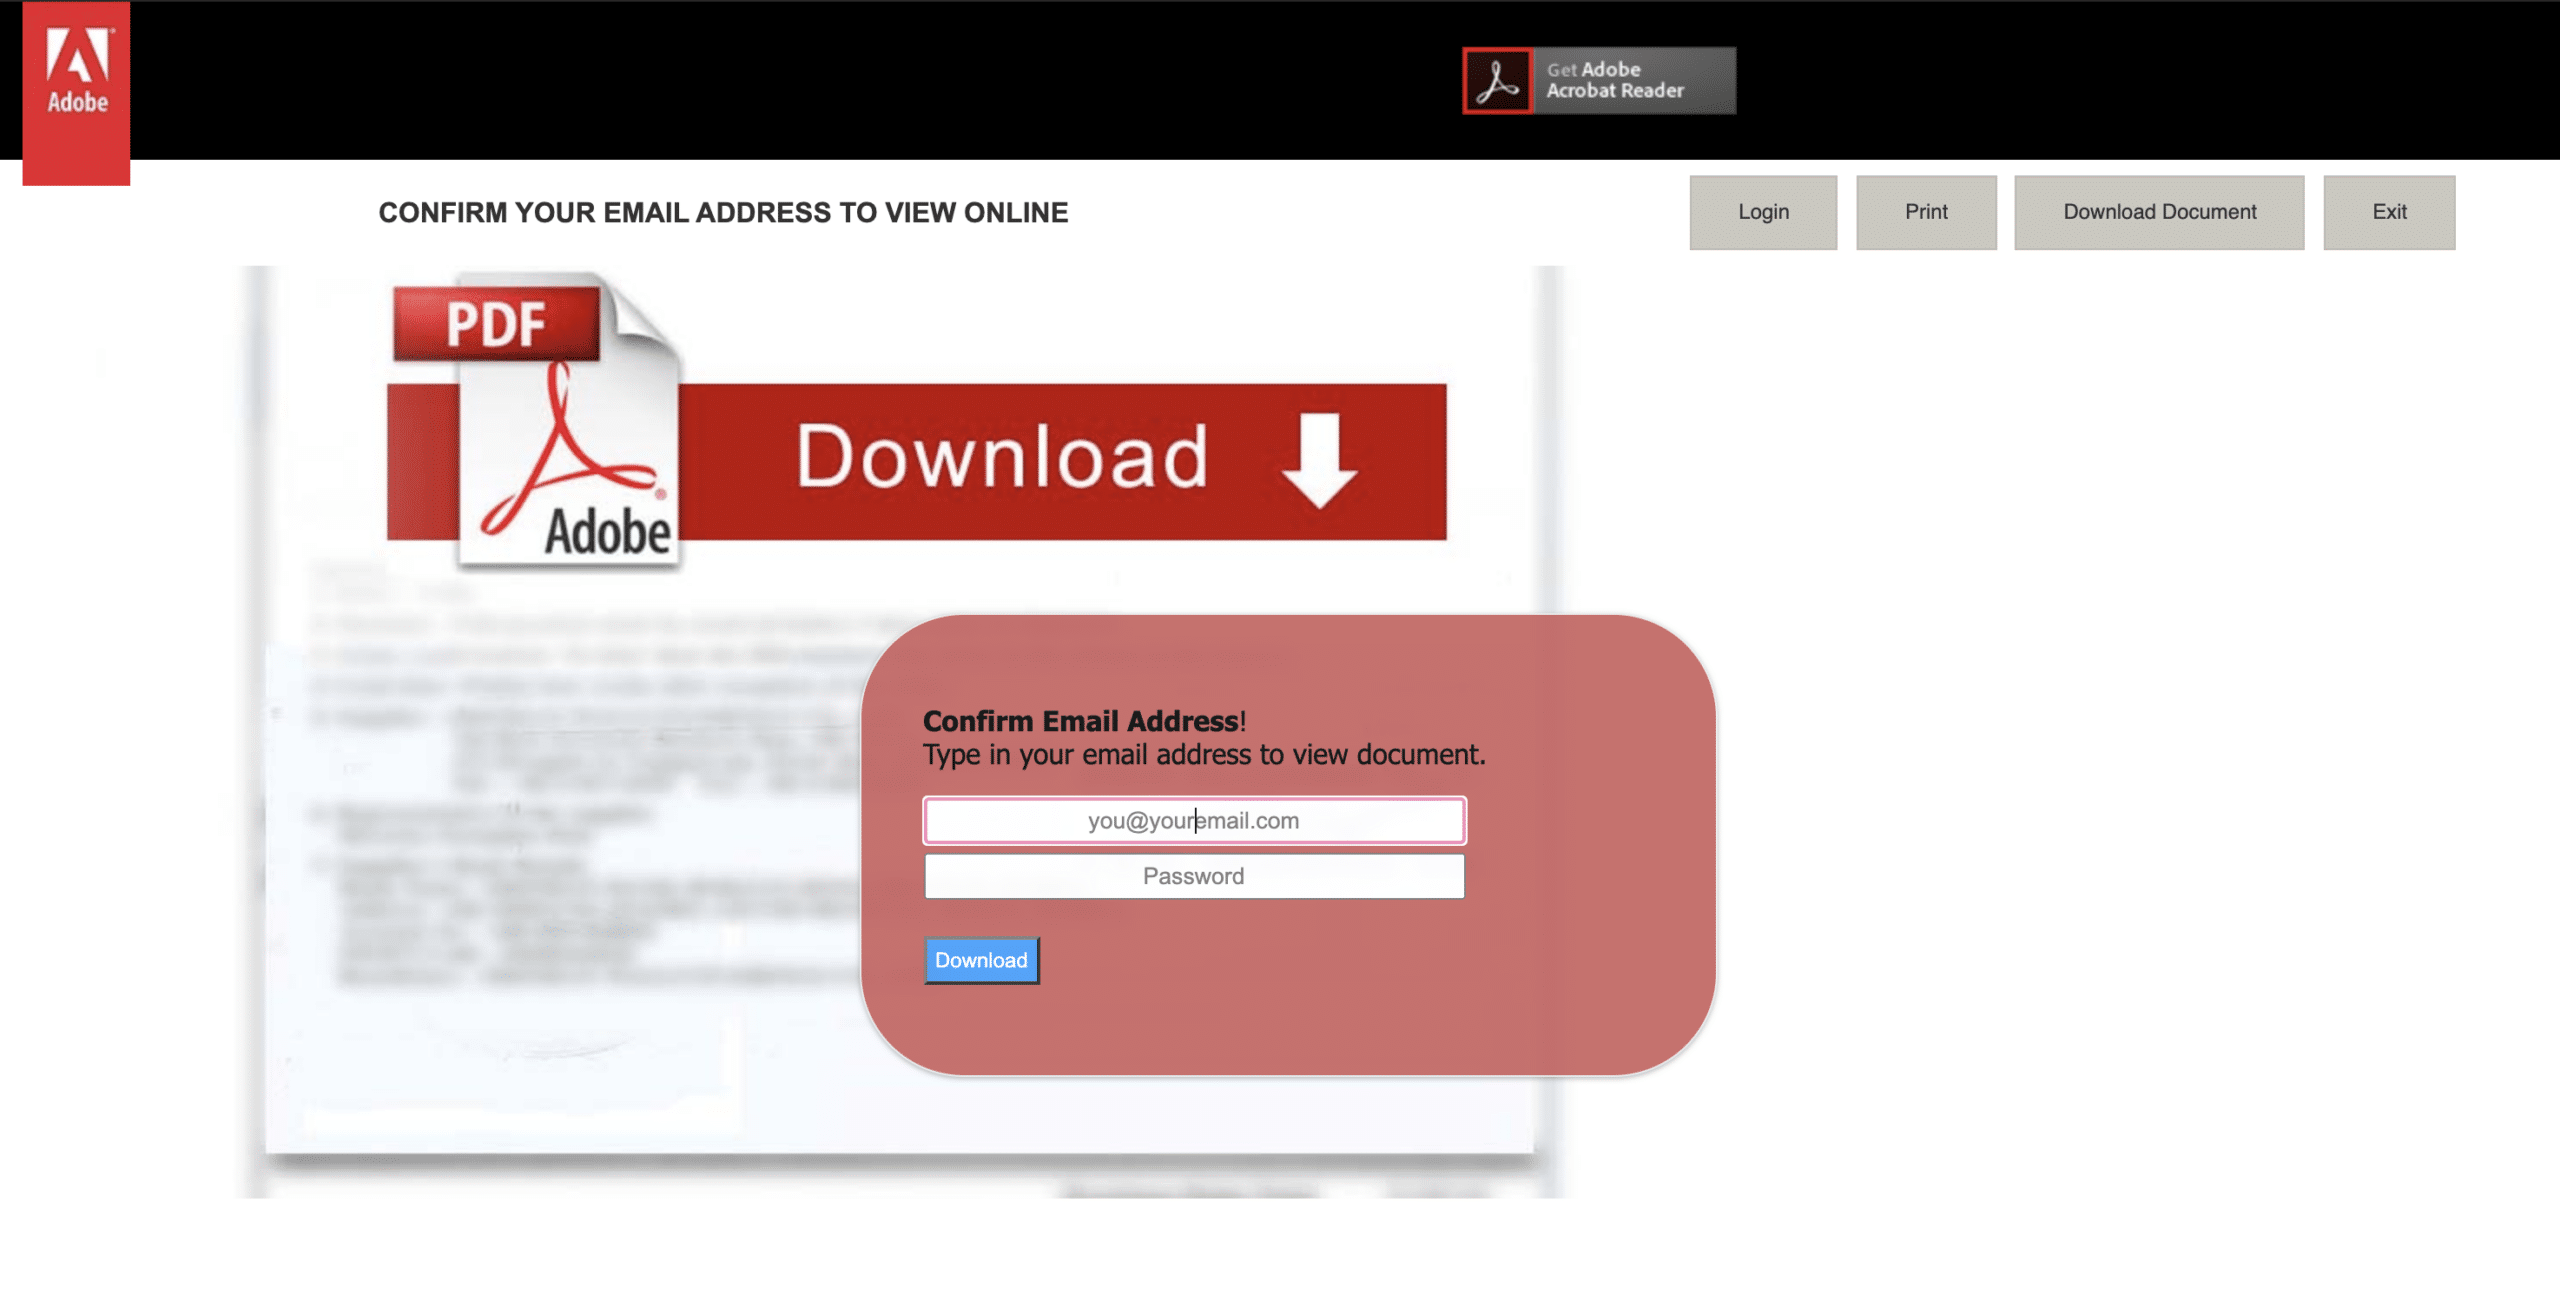 PDF download phishing scam